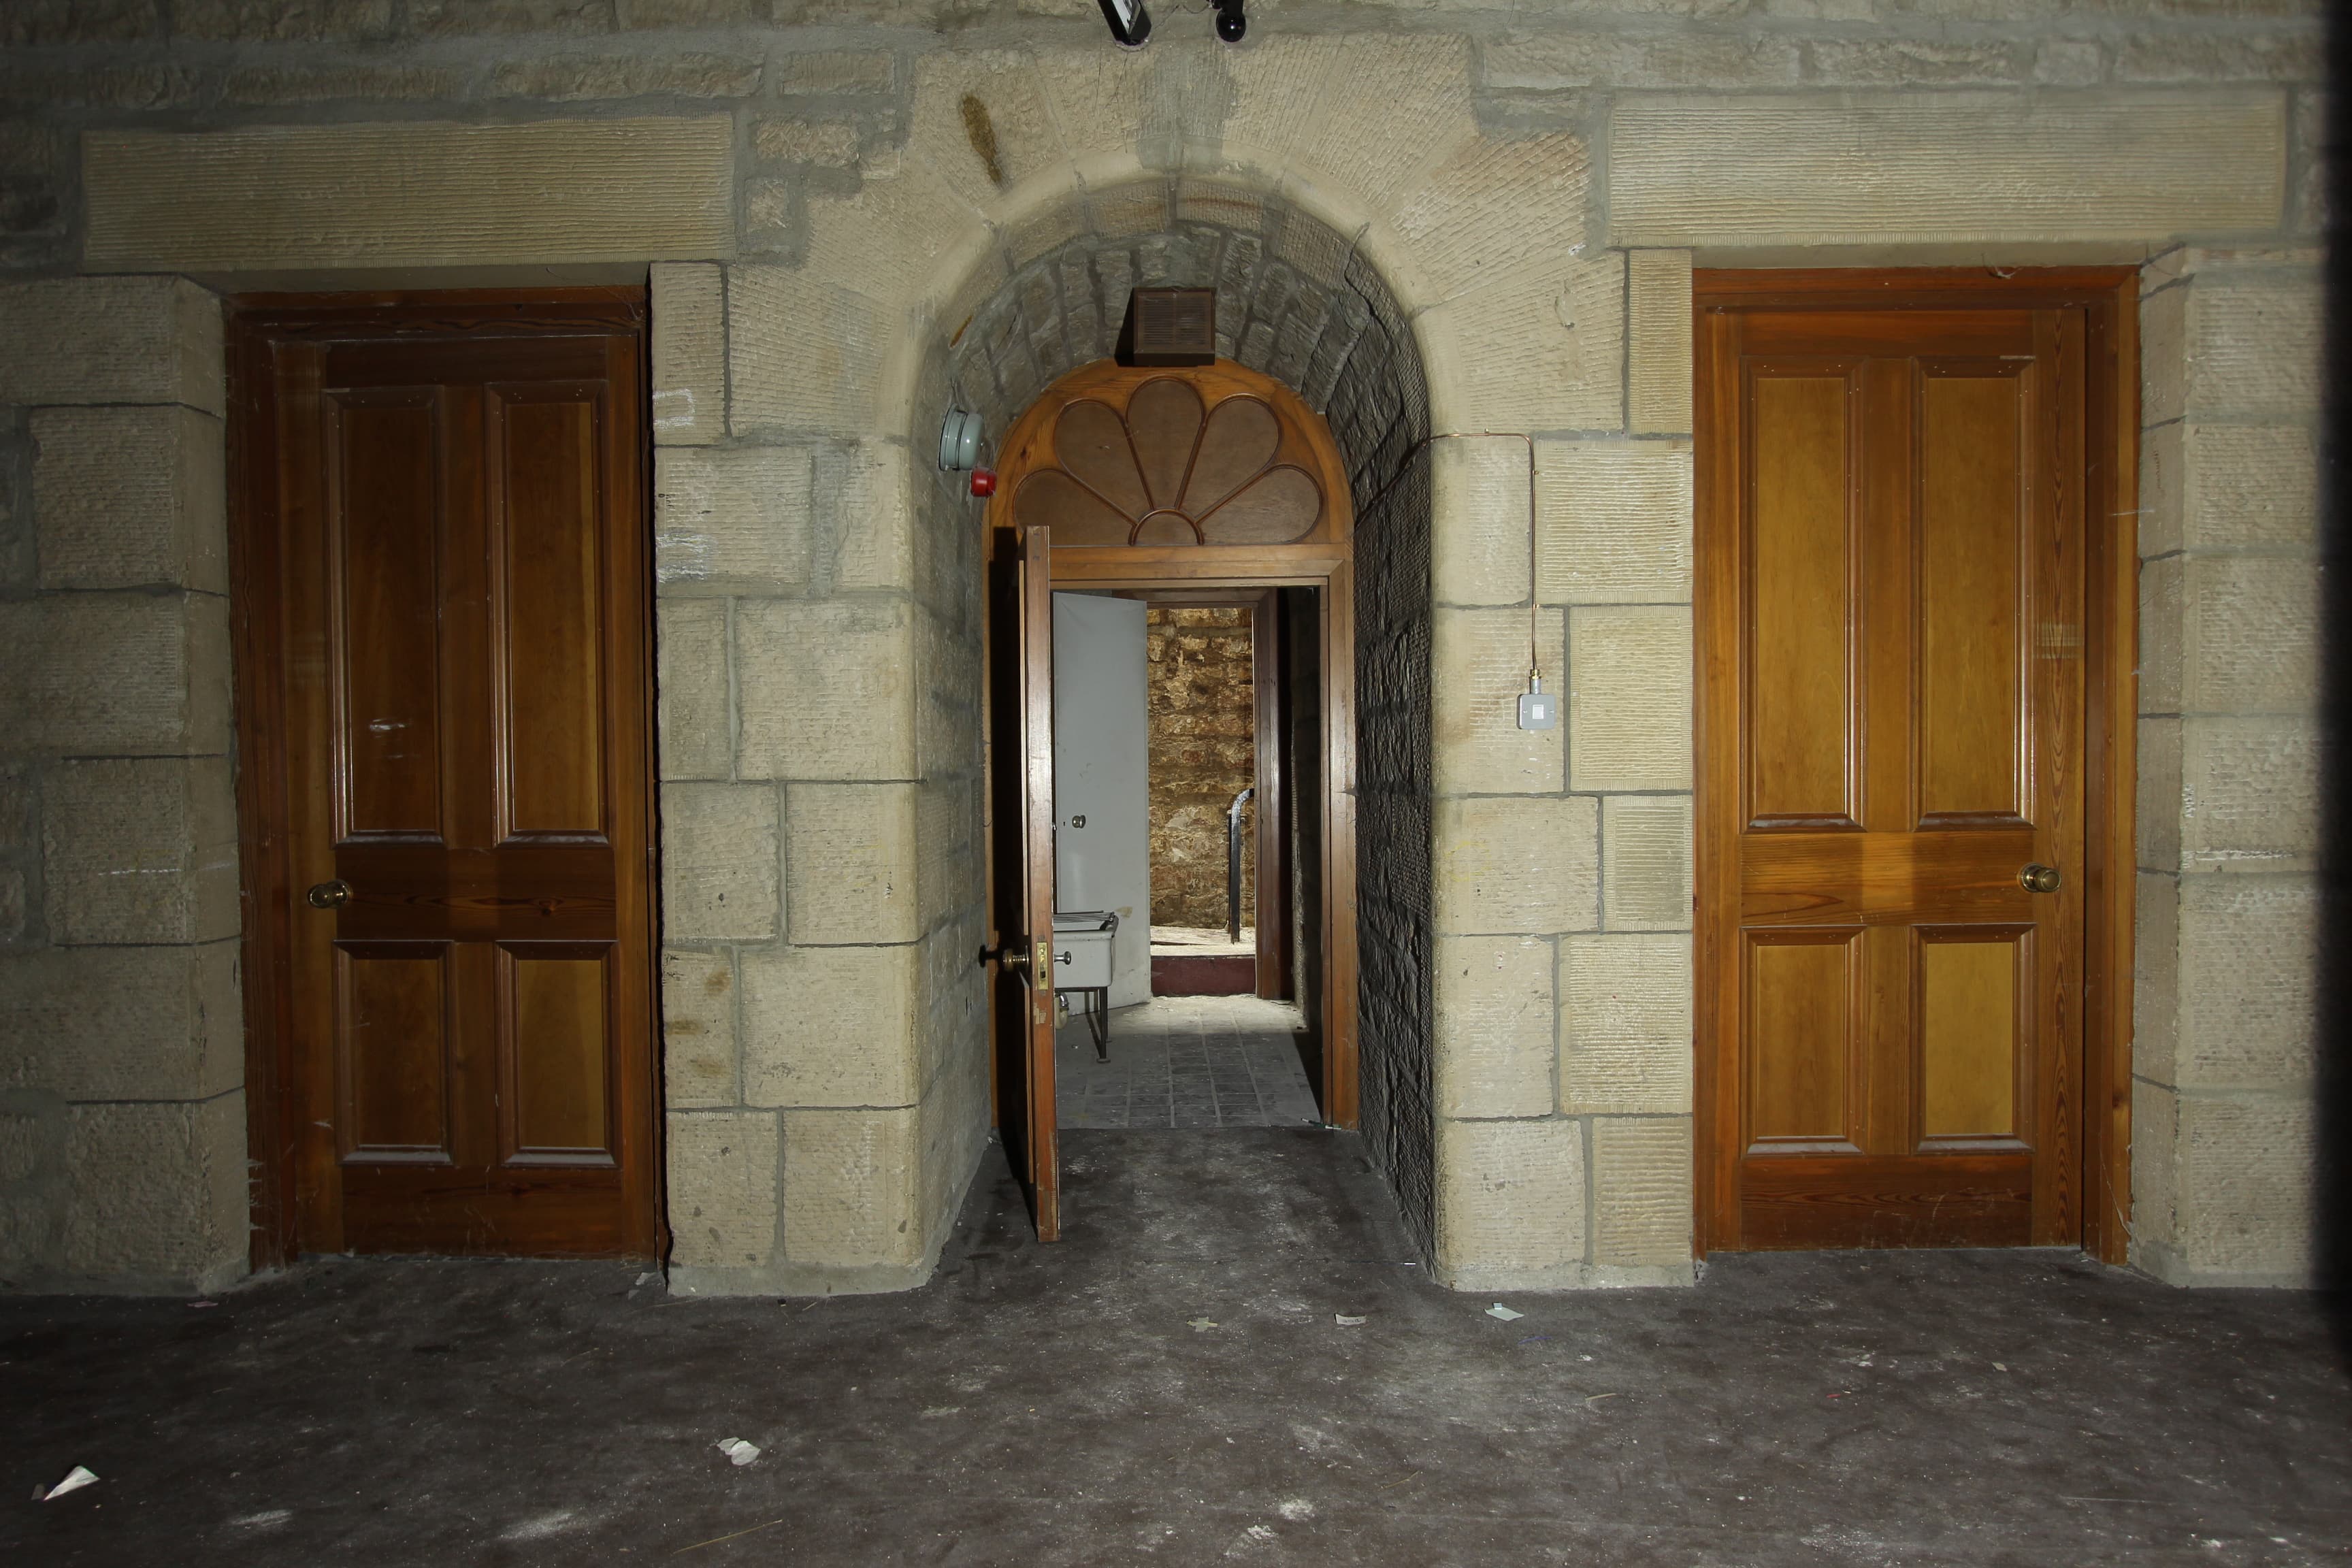 Underground doorways, three wooden doors, one open